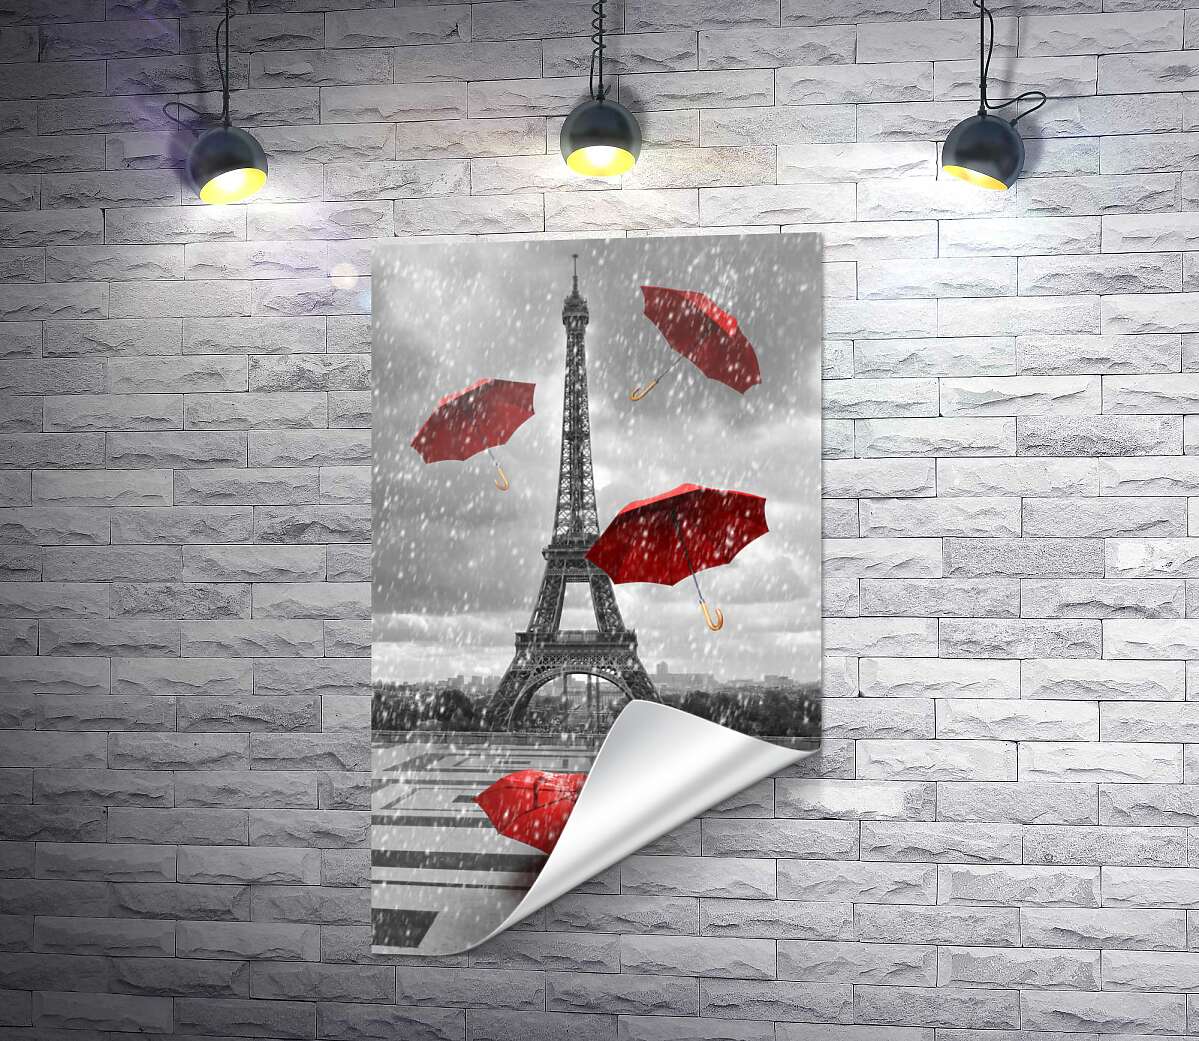 друк Дощ із червоних зонтиків перед Ейфелевою вежею (Eiffel tower)